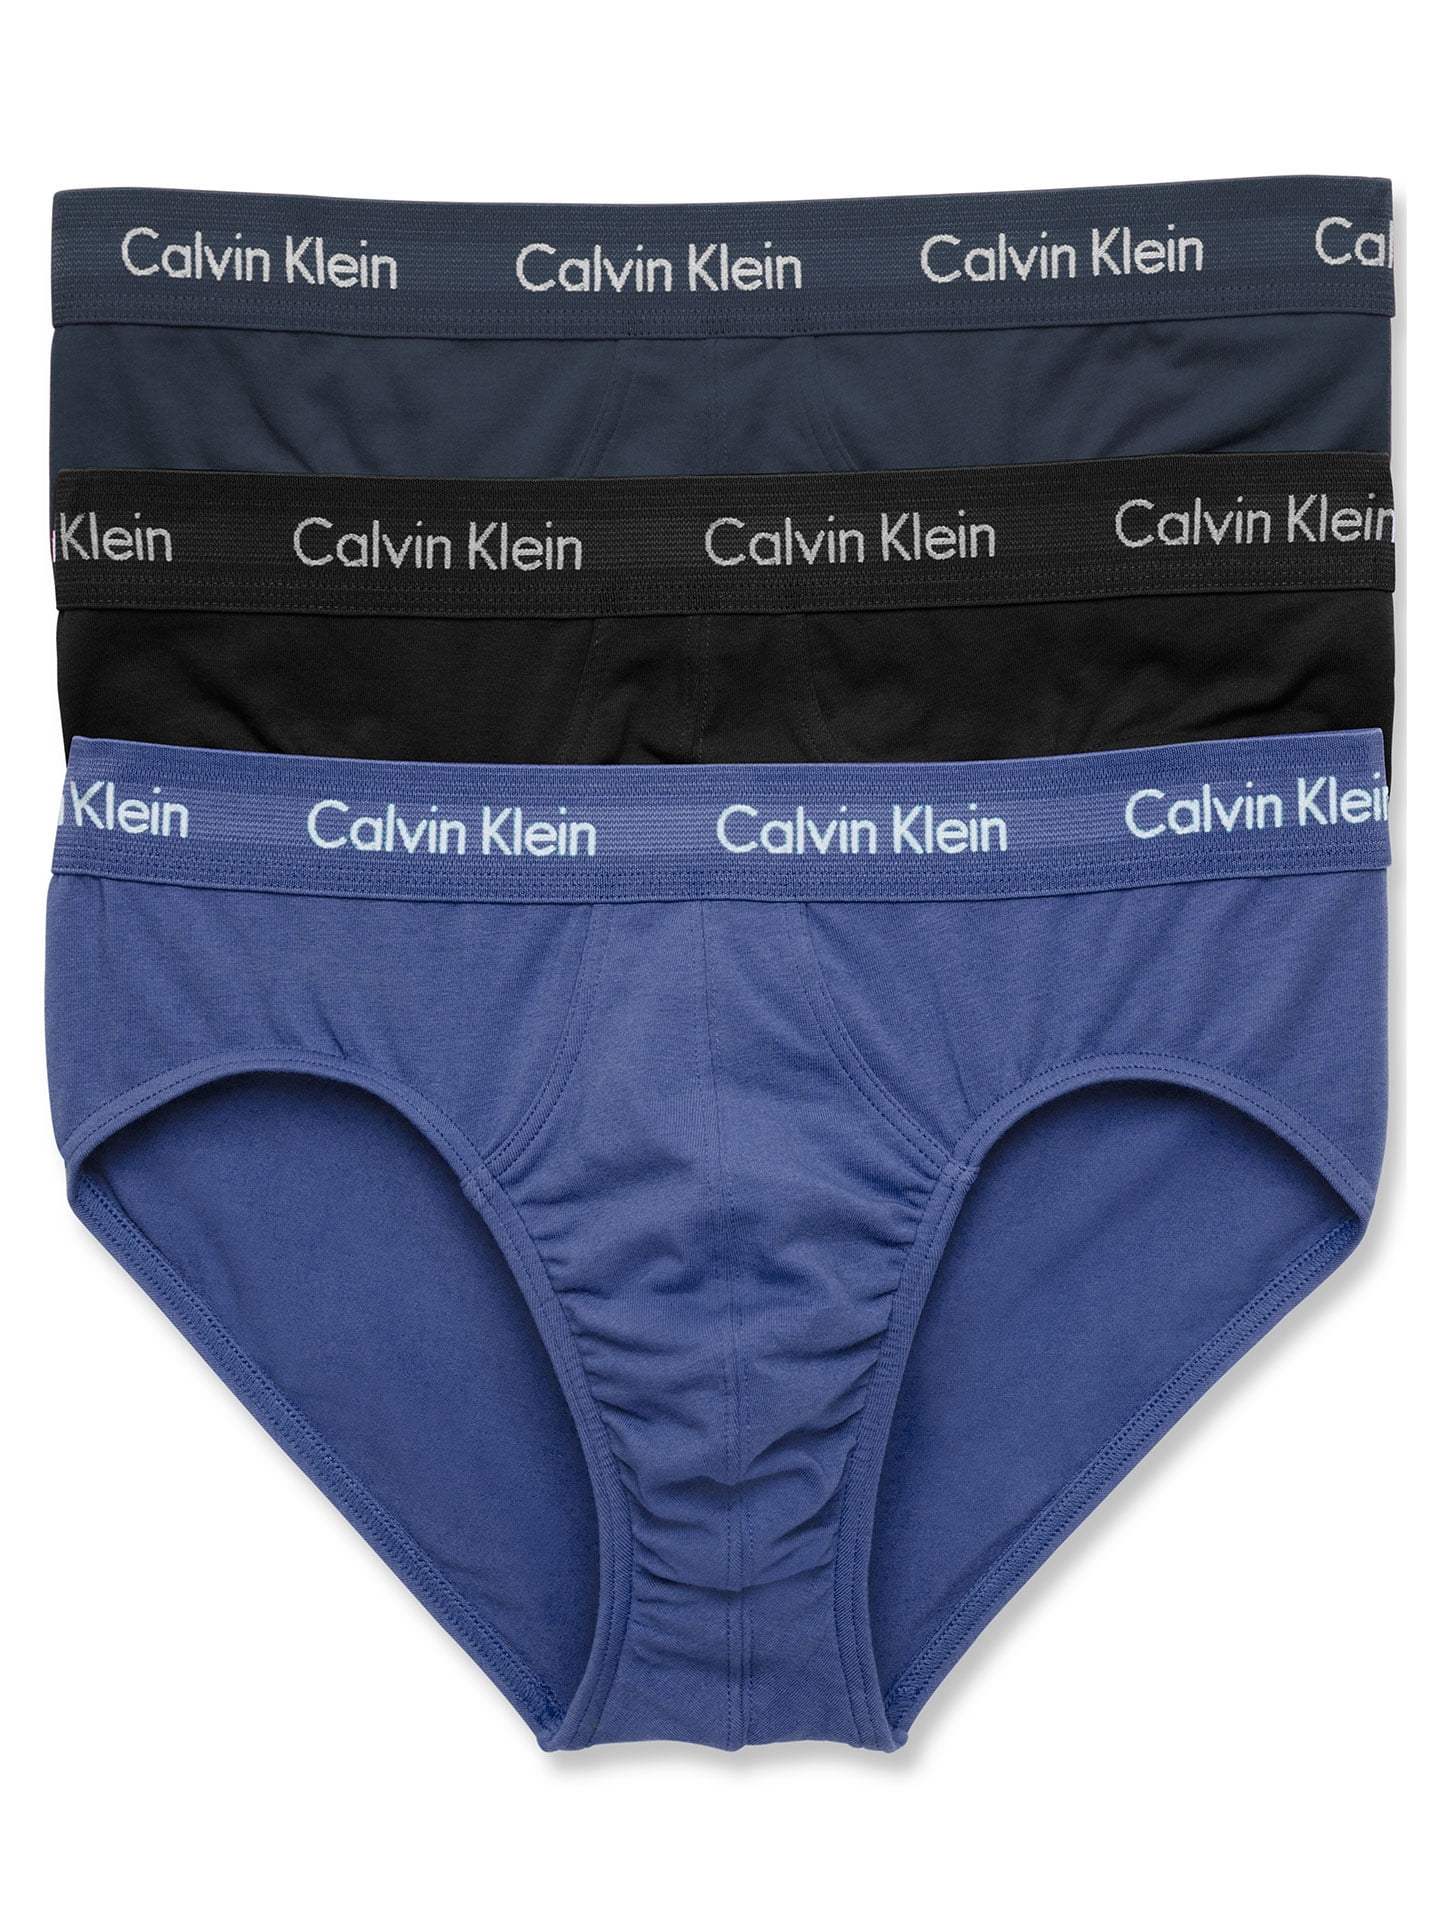 Calvin Klein Men's Cotton Stretch Hip Brief - 3 Pack, Black, Large -  